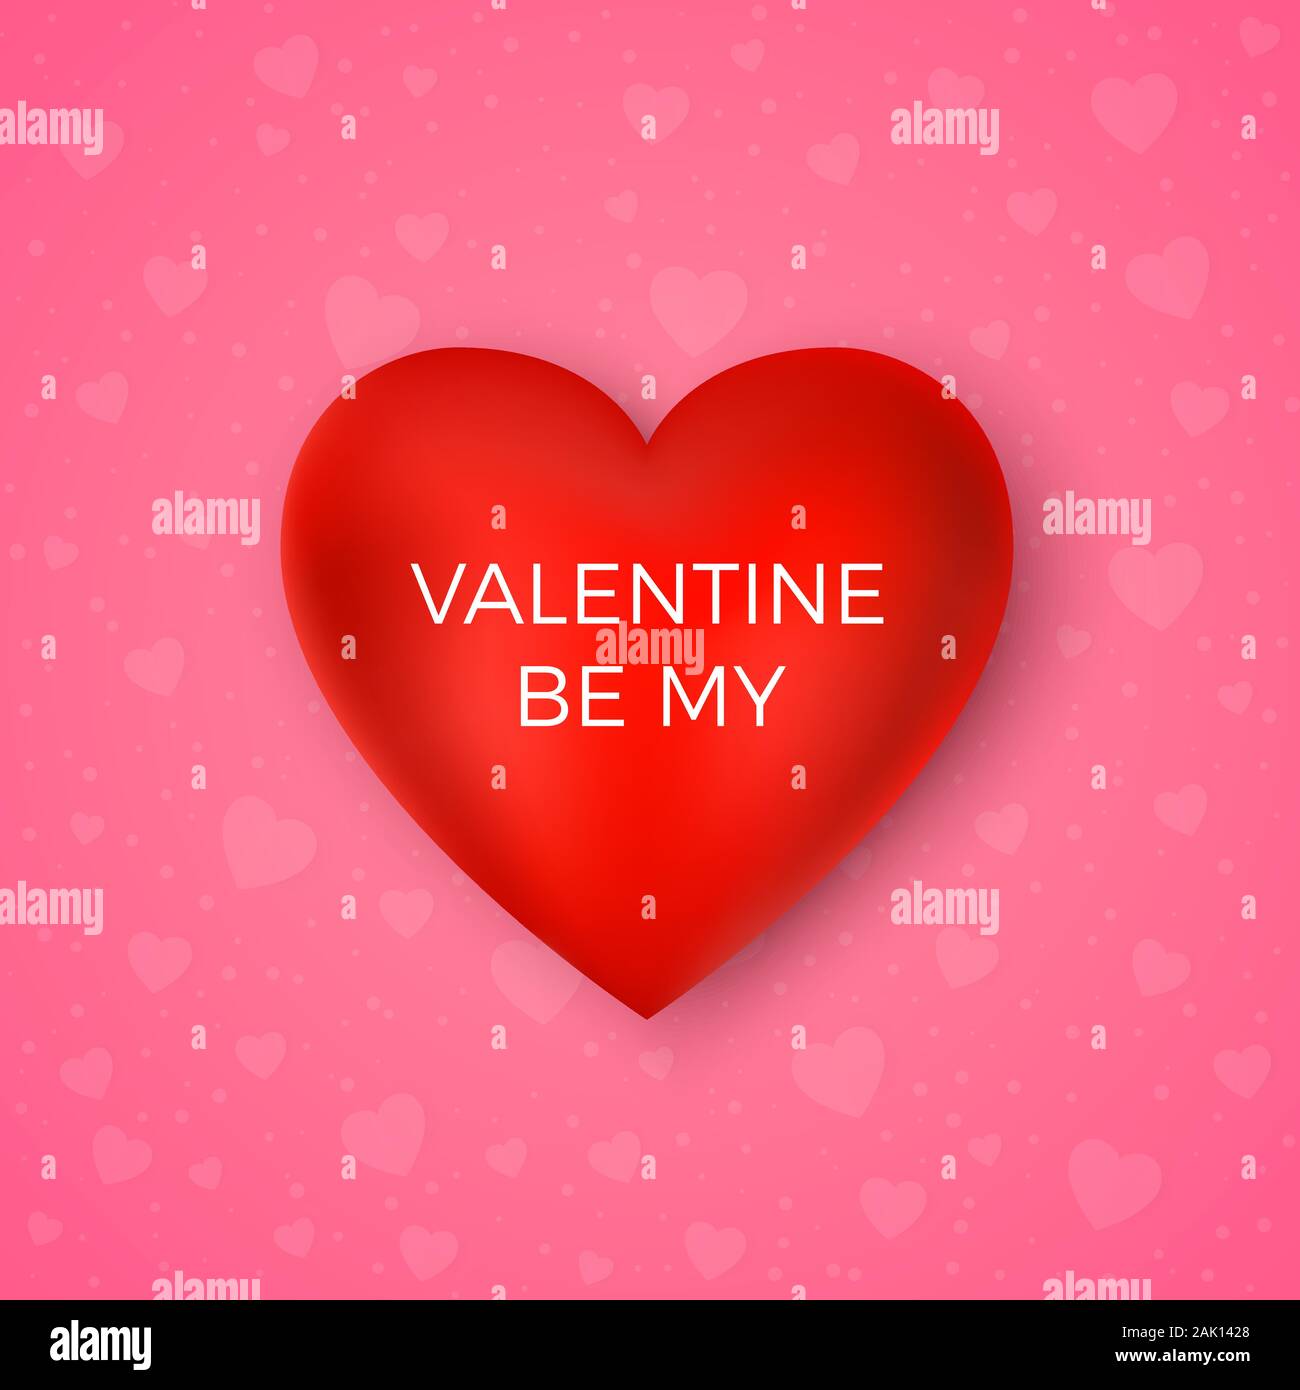 Valentinstag Grusskarten. My Valentine. Rotes Herz mit Text auf rosa Hintergrund. Vektor Stock Vektor